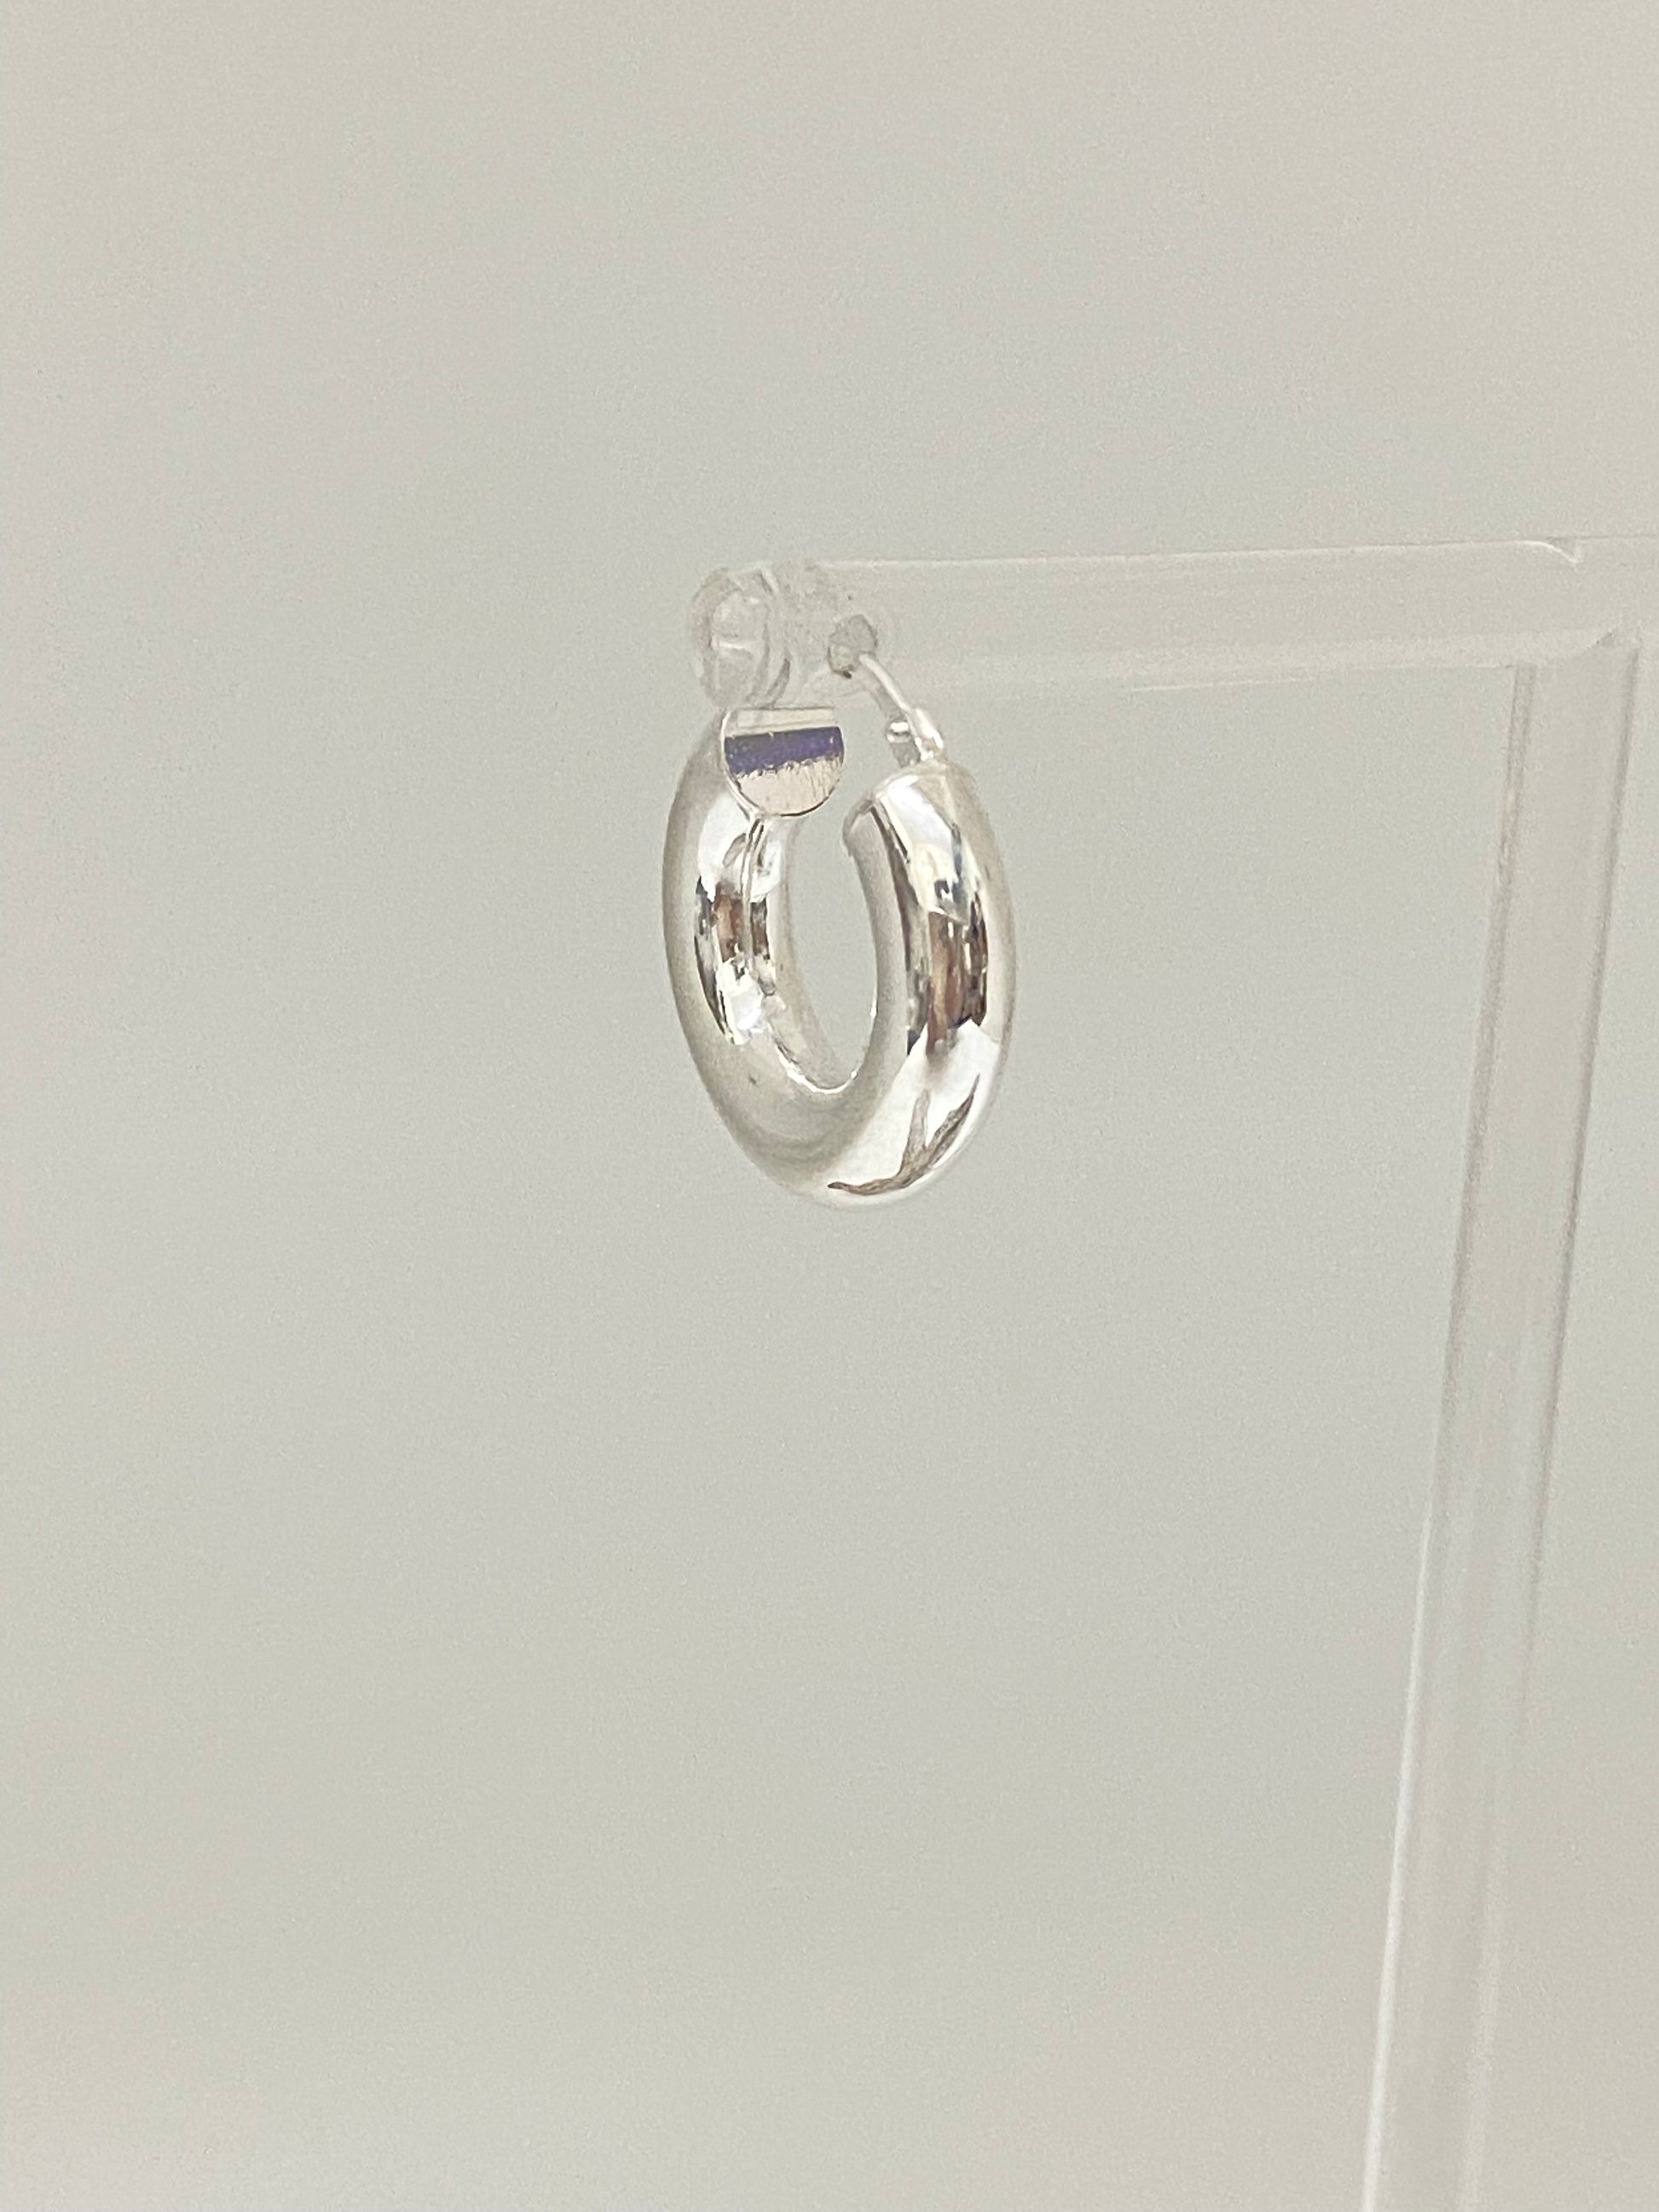 Boucles d'oreilles anneaux Chunky // Argent – Maksym Joaillerie